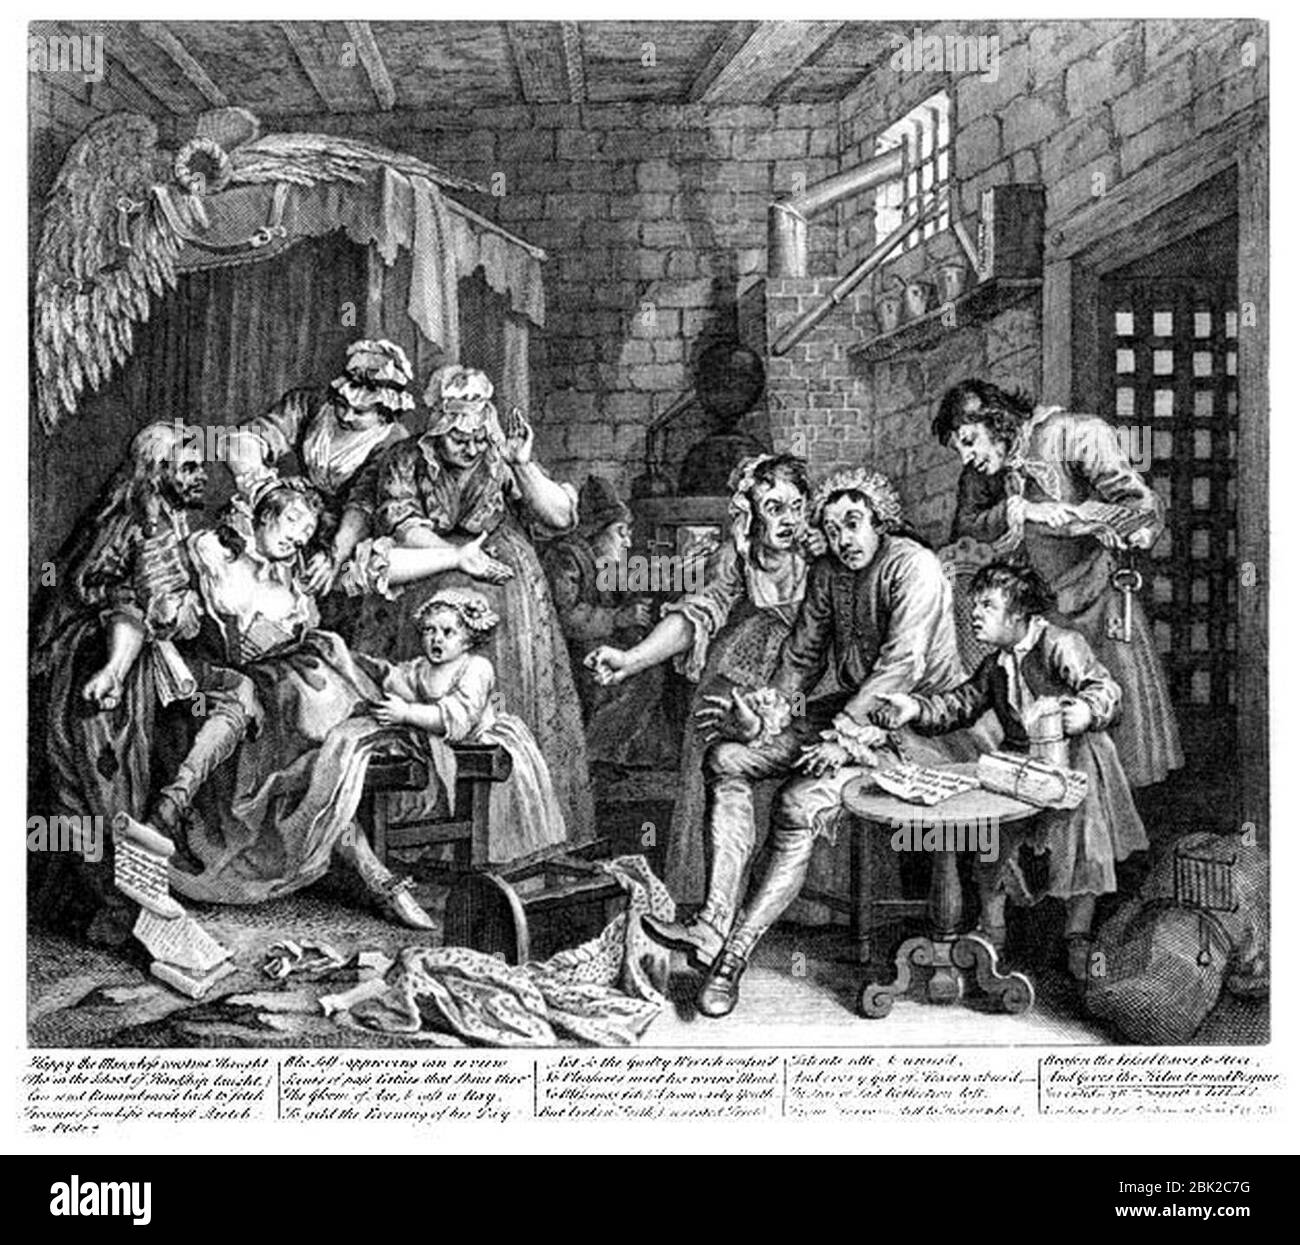 William Hogarth - A Rake's Progress - Plate 7 - The Prison Scene. Stock Photo